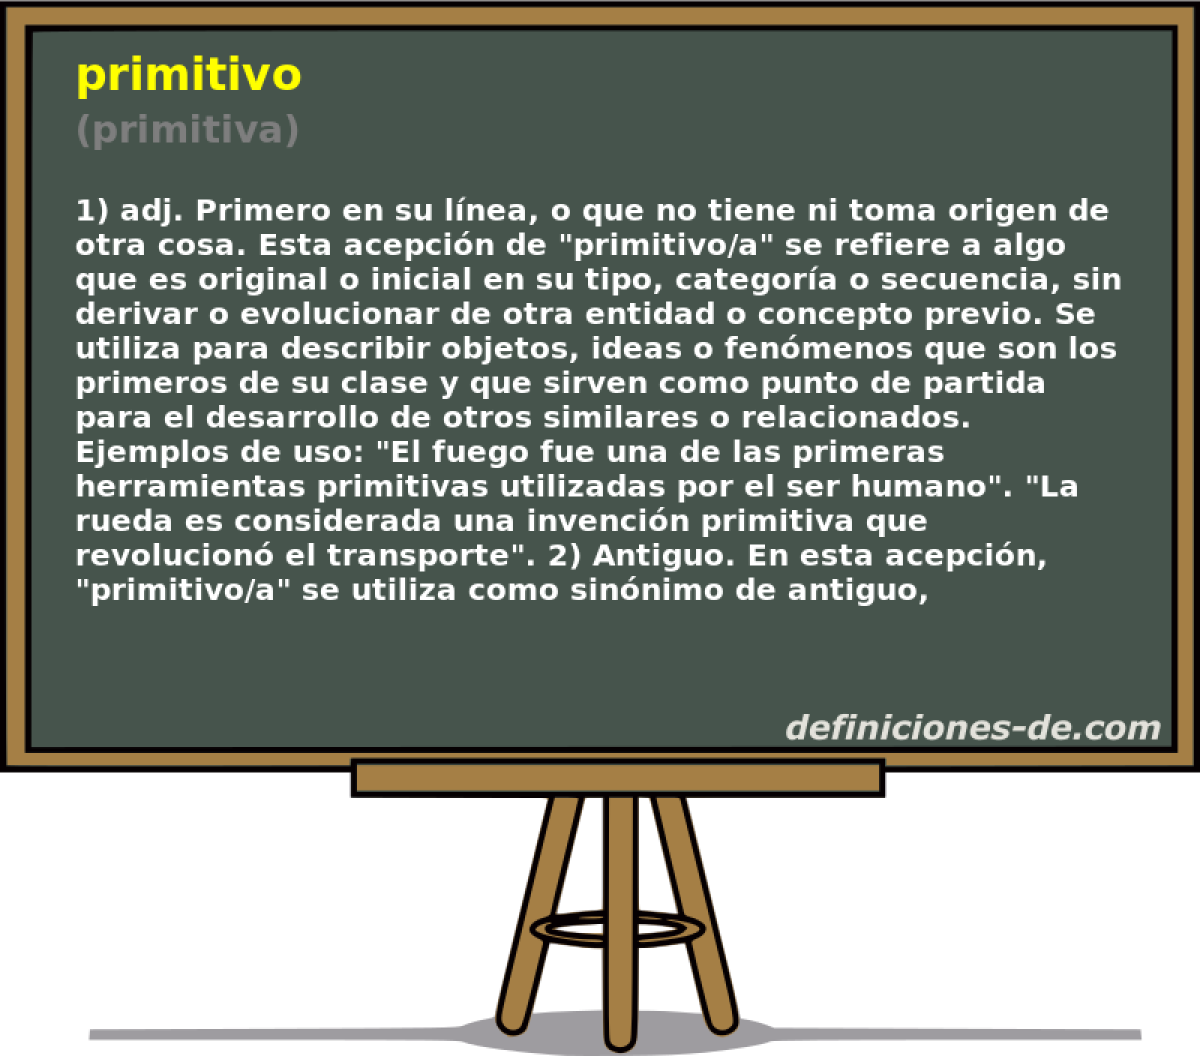 primitivo (primitiva)